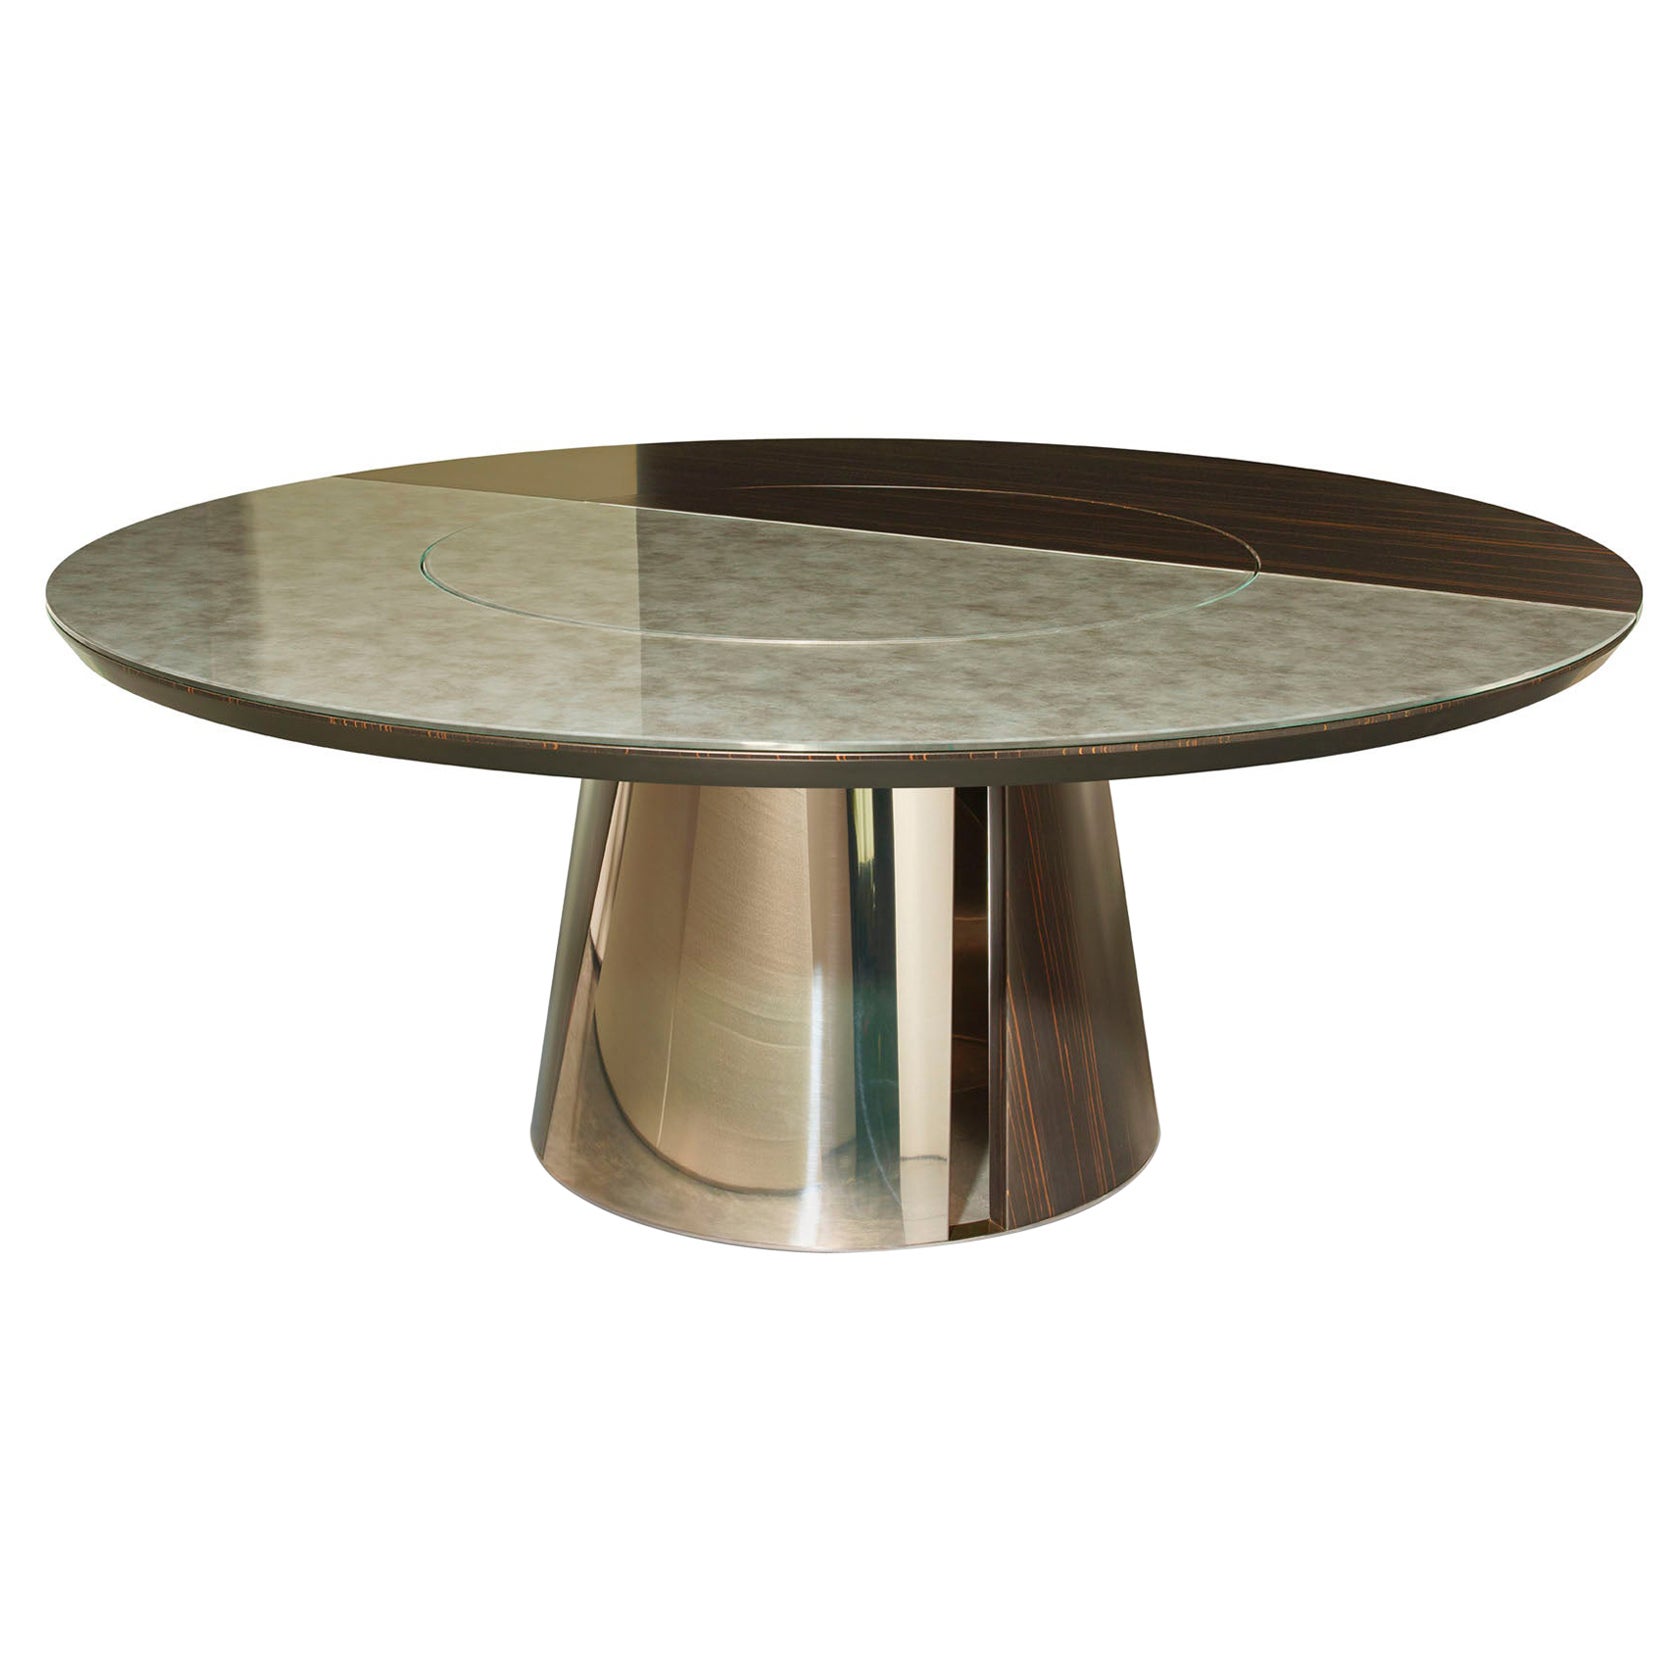 Runder Tisch mit Metallrahmen und Beinen aus glänzendem oder satiniertem Ebenholz oder Eiche, anpassbar